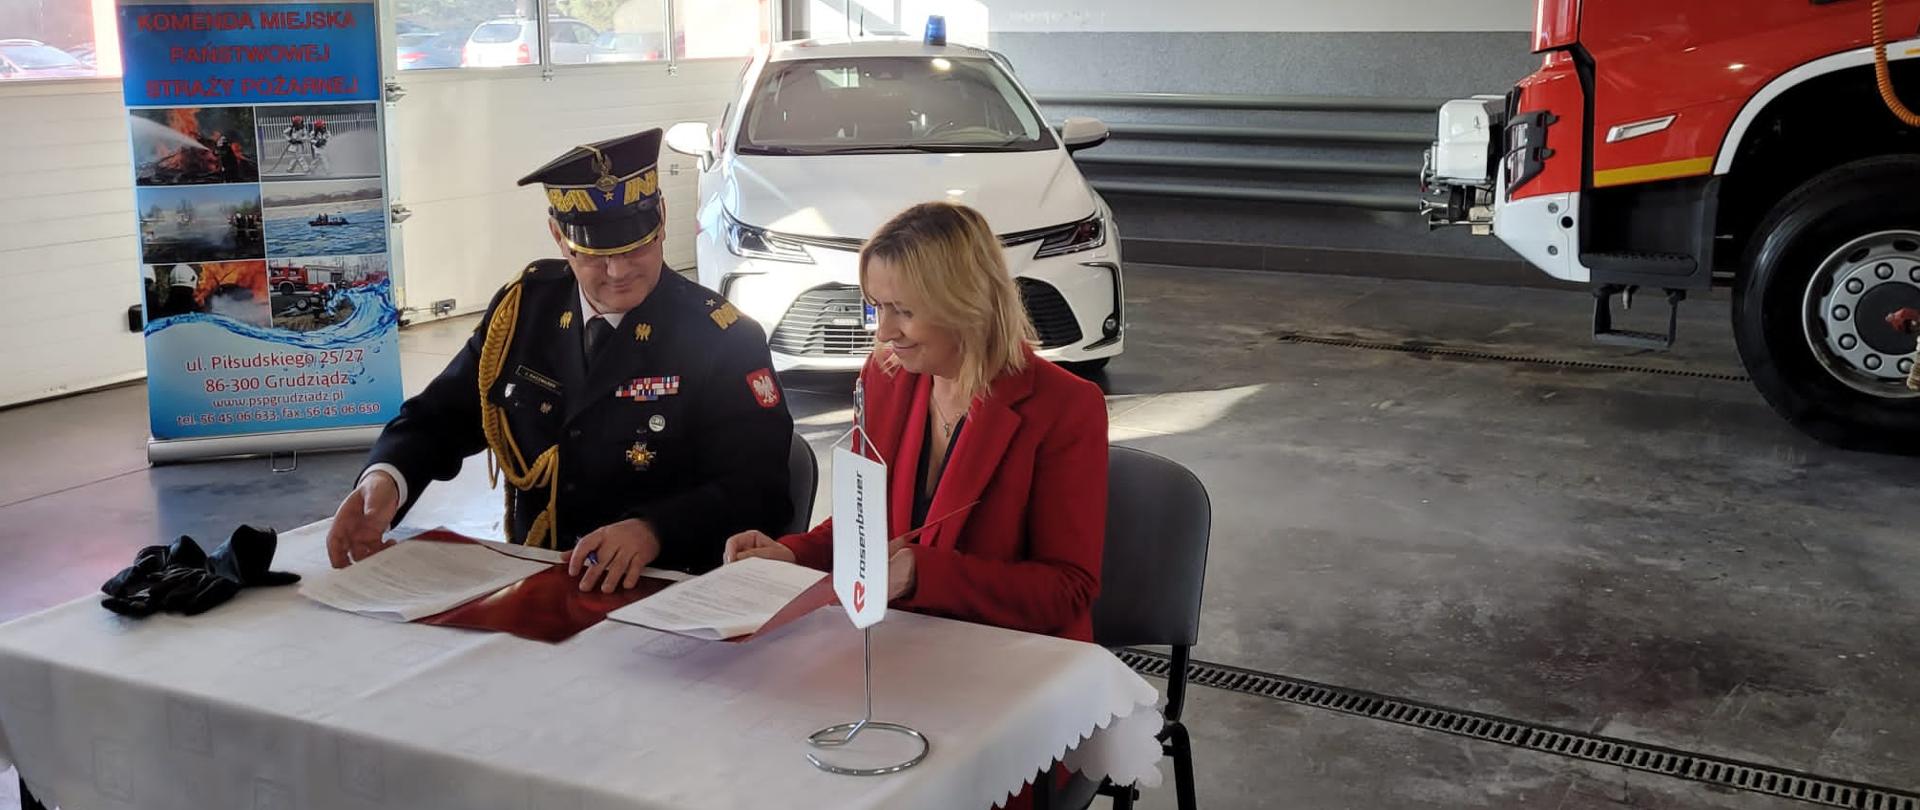 Przy stole siedzą komendant wojewódzki i przedstawiciel firmy Rosenbauer - kobieta. Podpisują umowę. W tle widać pojazdy. baner reklamowy, wrota garażowe.